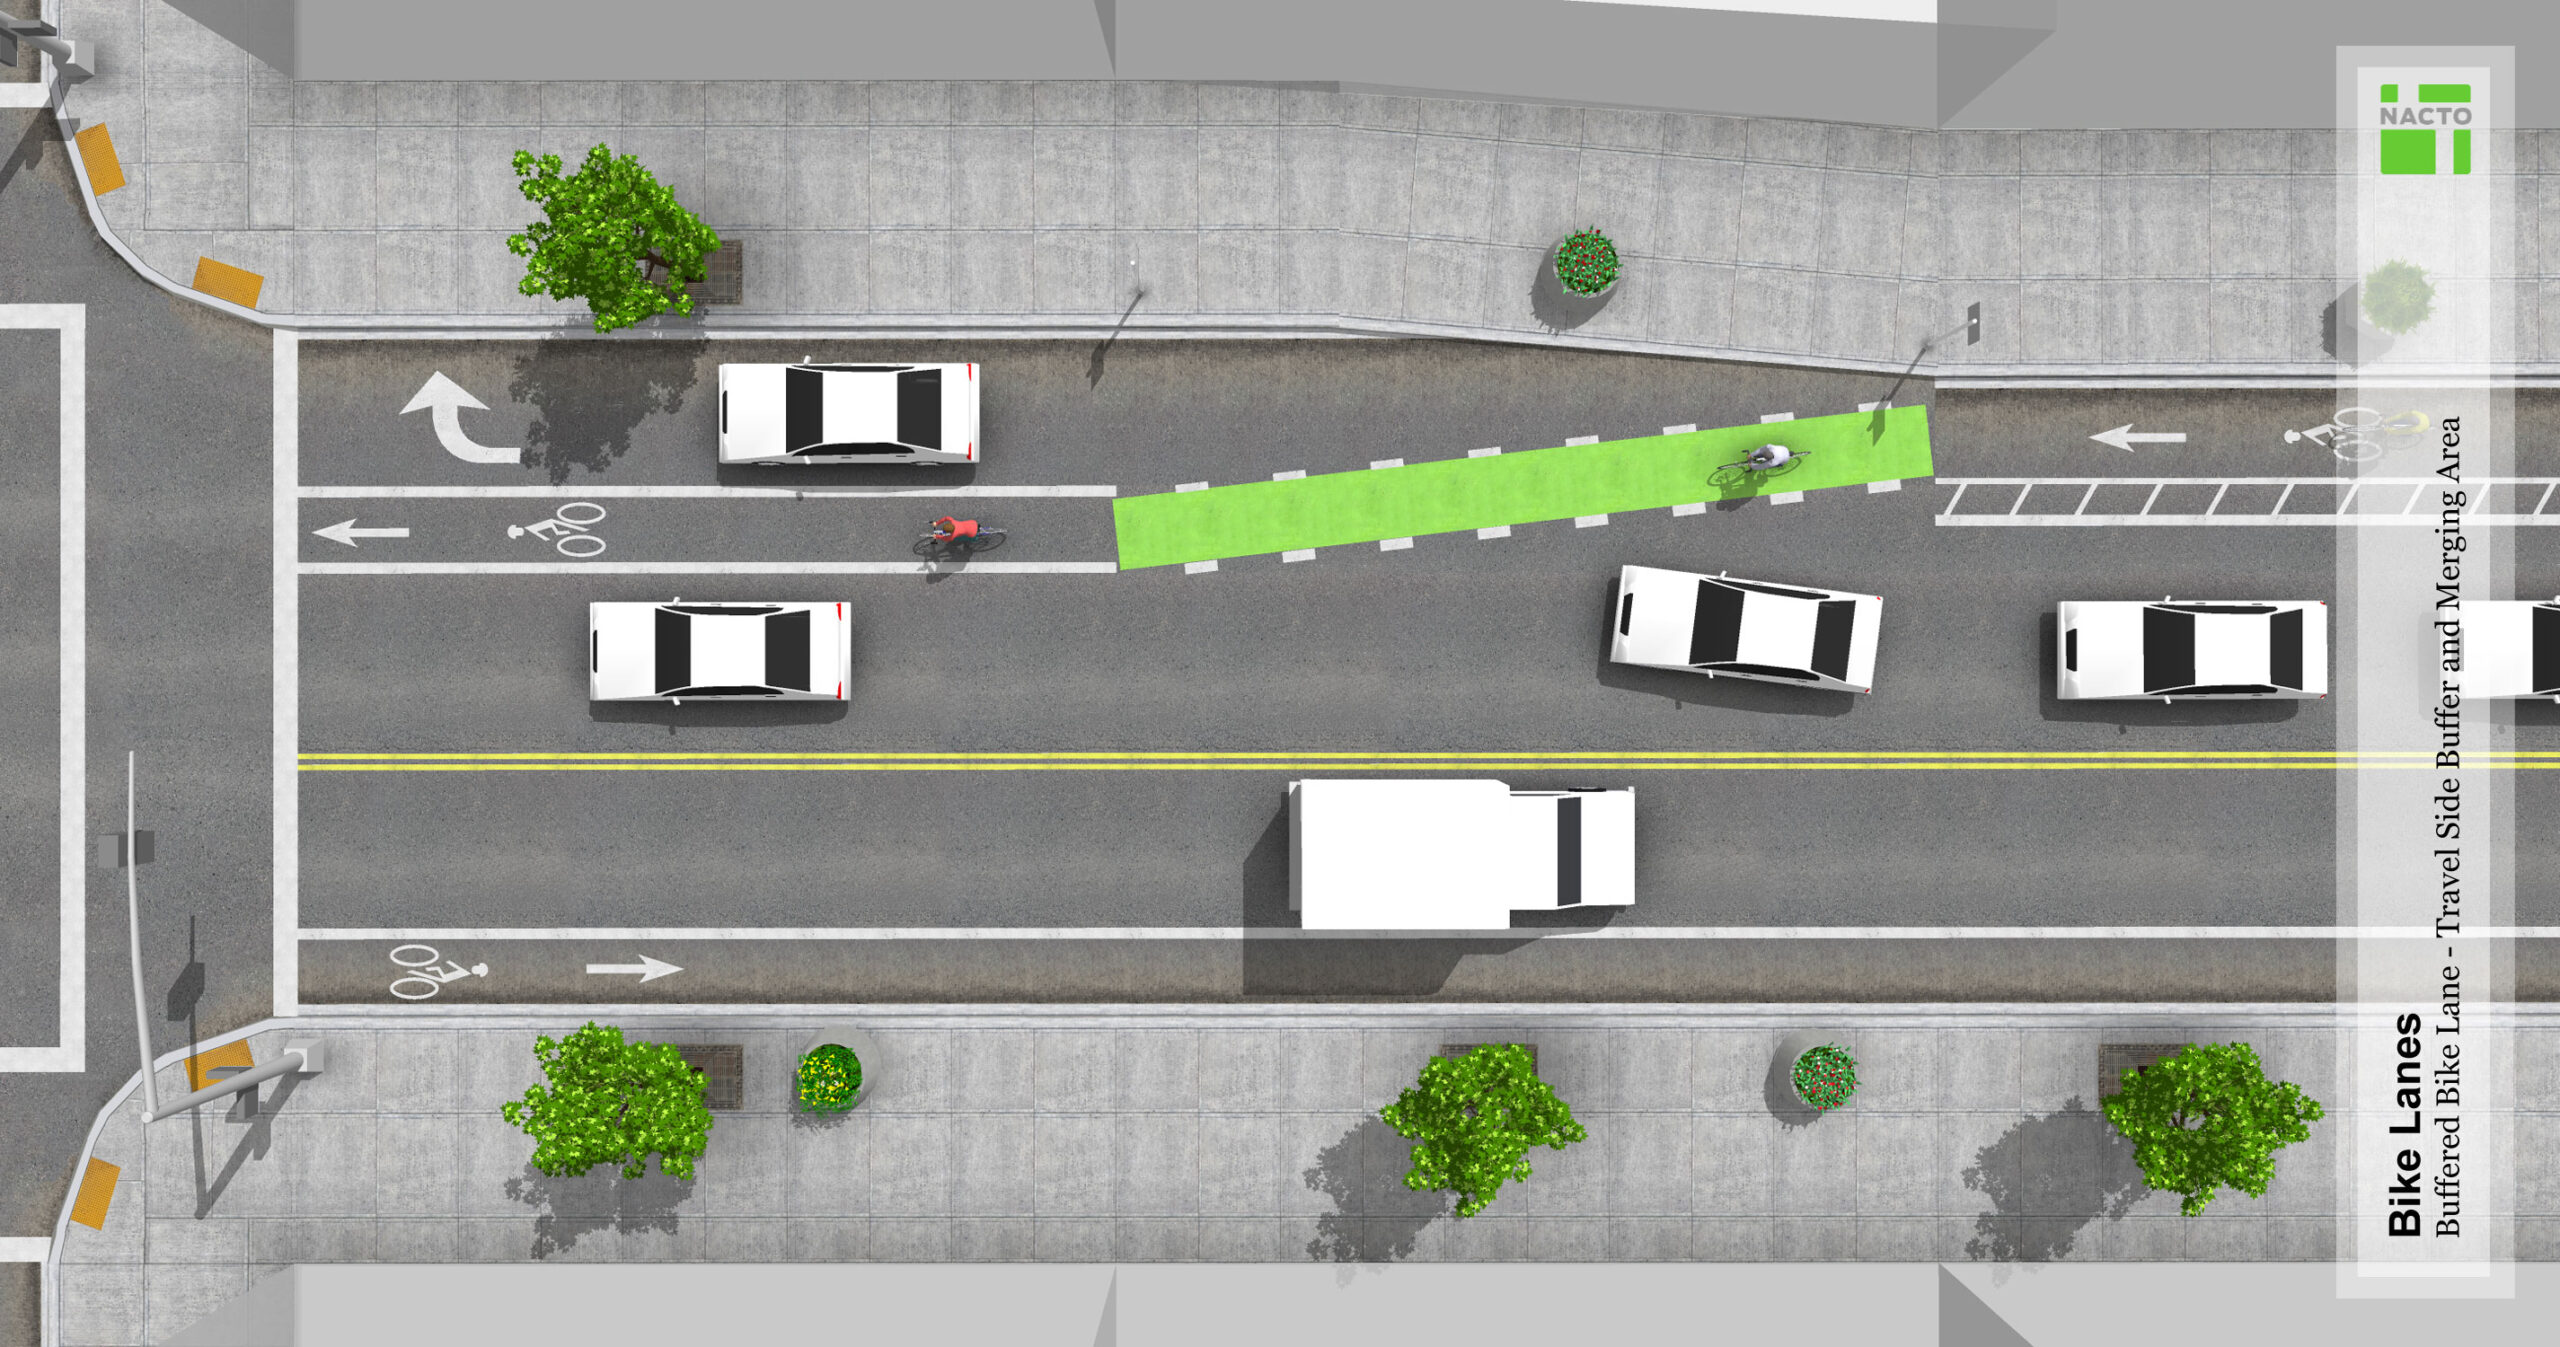 Buffered merging bike lane (NACTO)